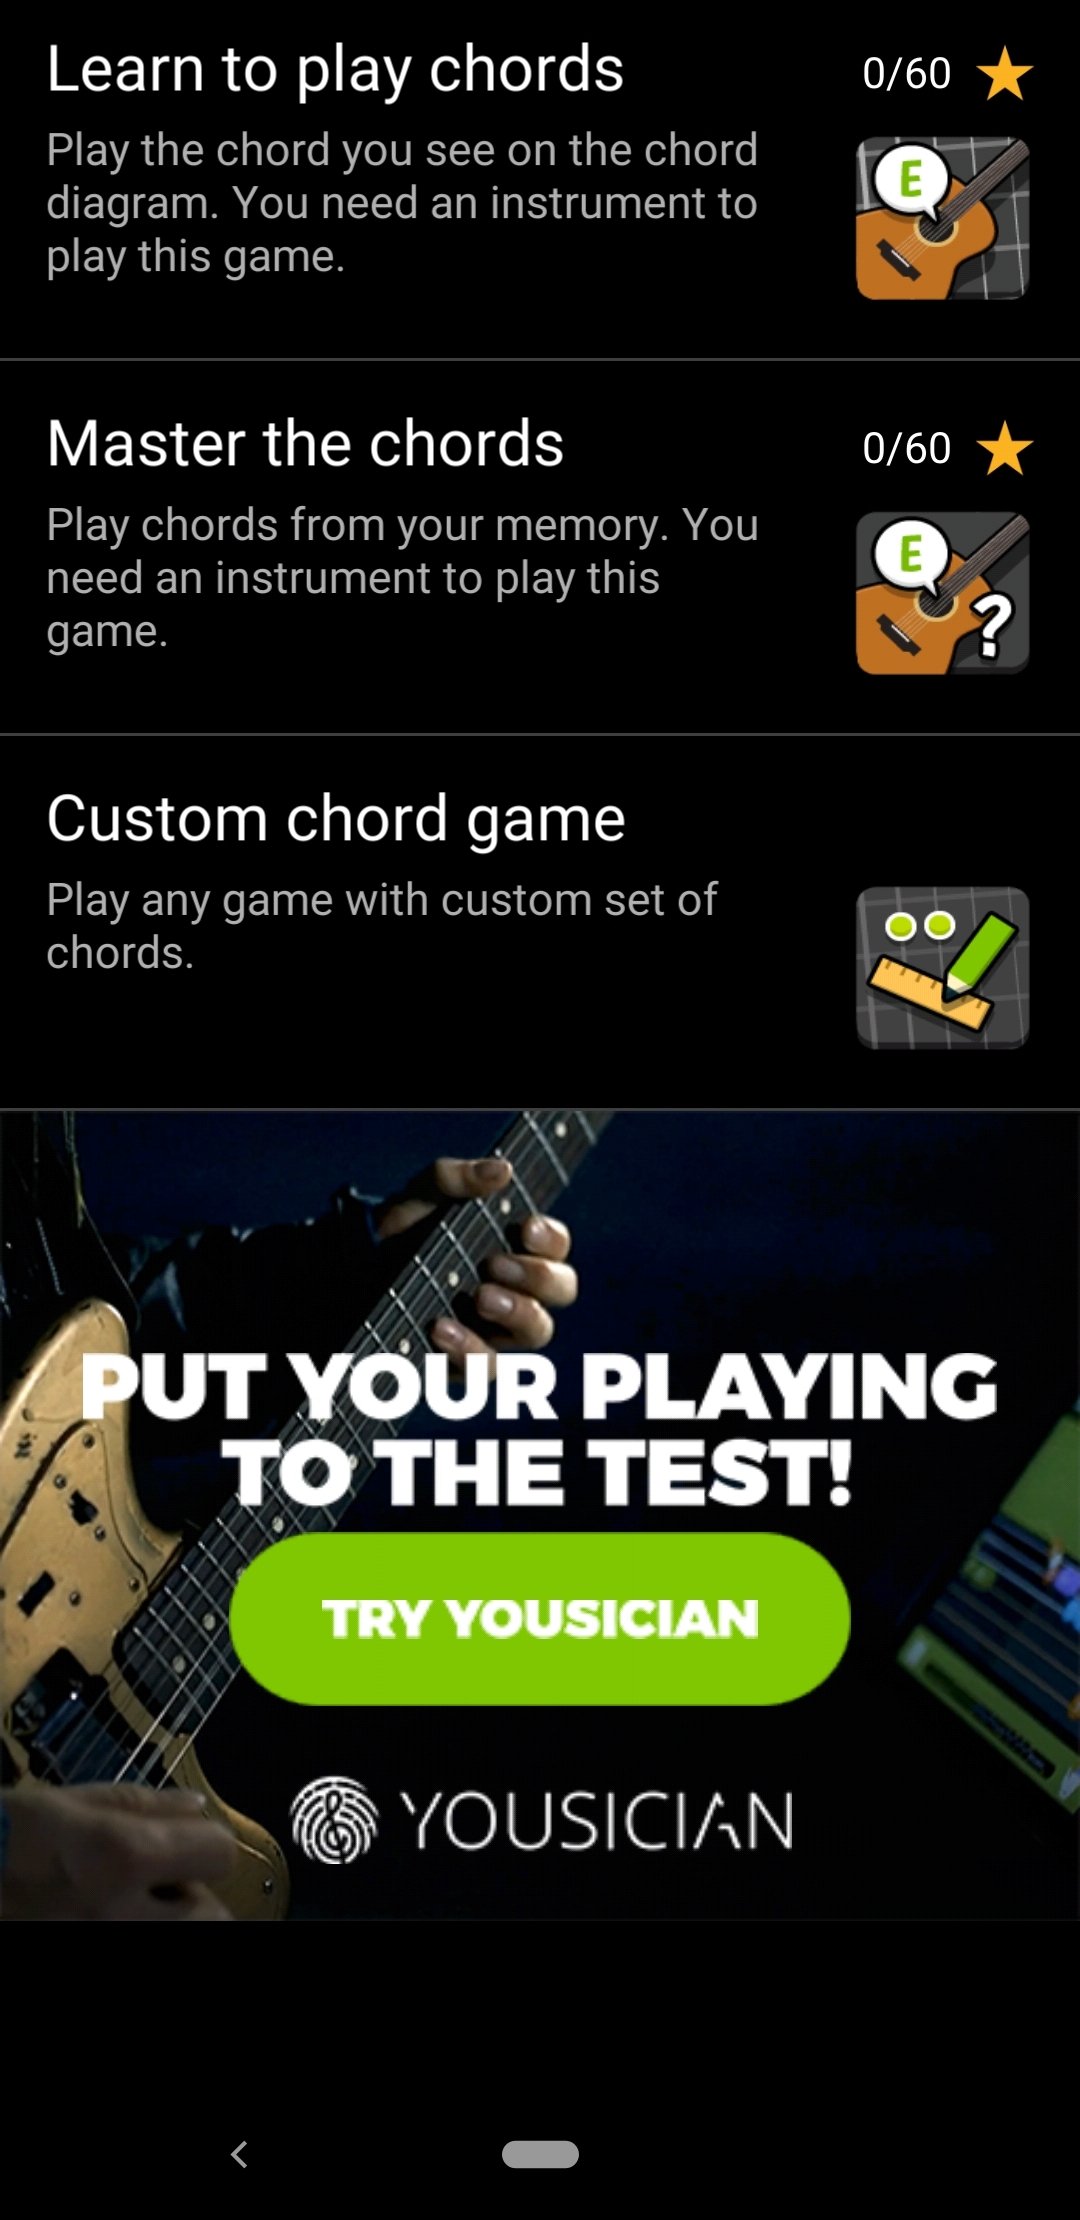 pelota Suburbio Articulación Descargar Afinador de guitarra GuitarTuna 7.6 APK - Descargar gratis para  Android